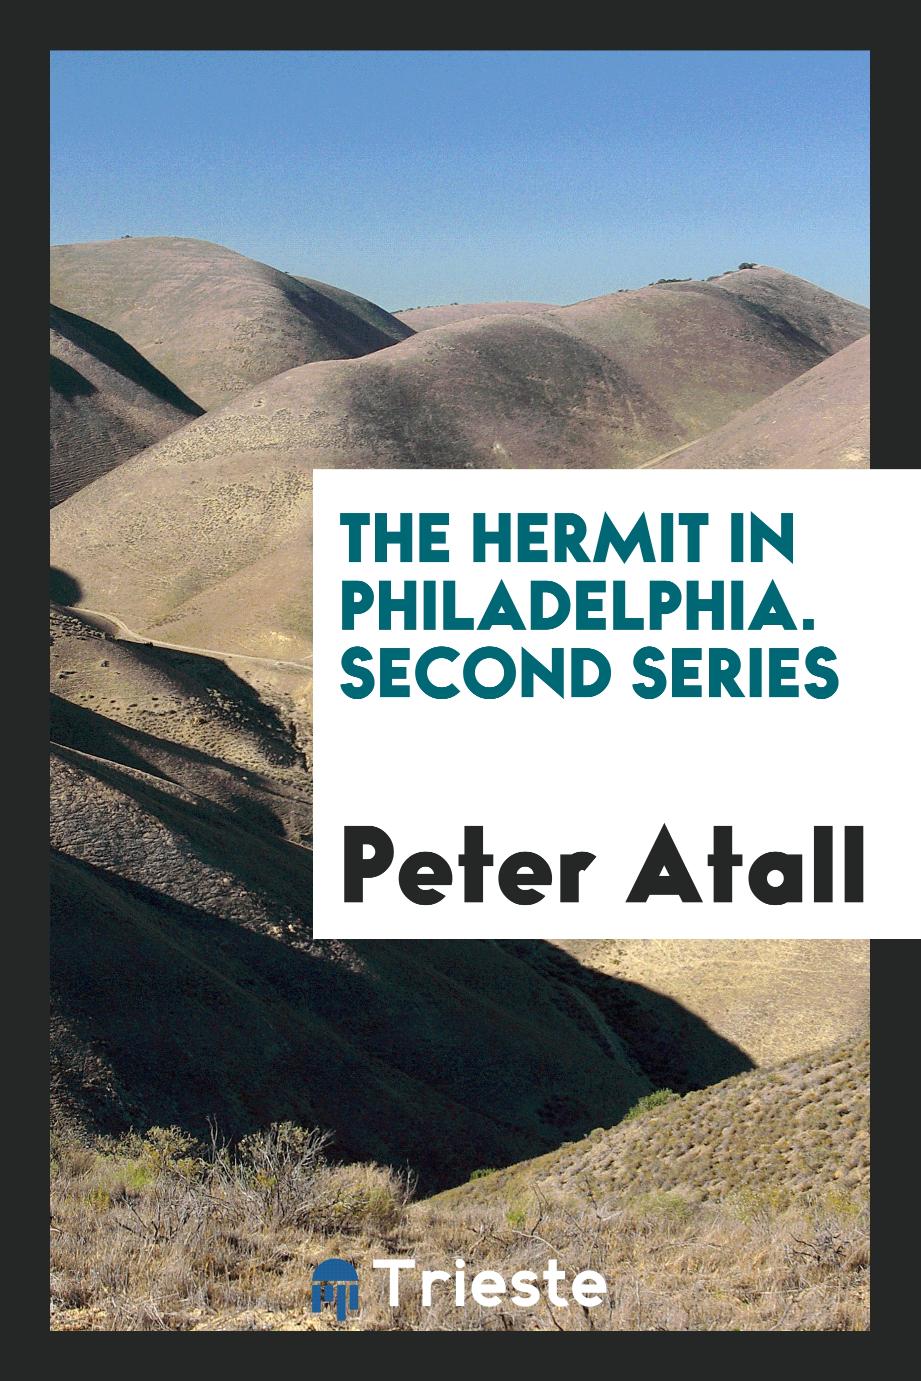 The hermit in Philadelphia. Second series